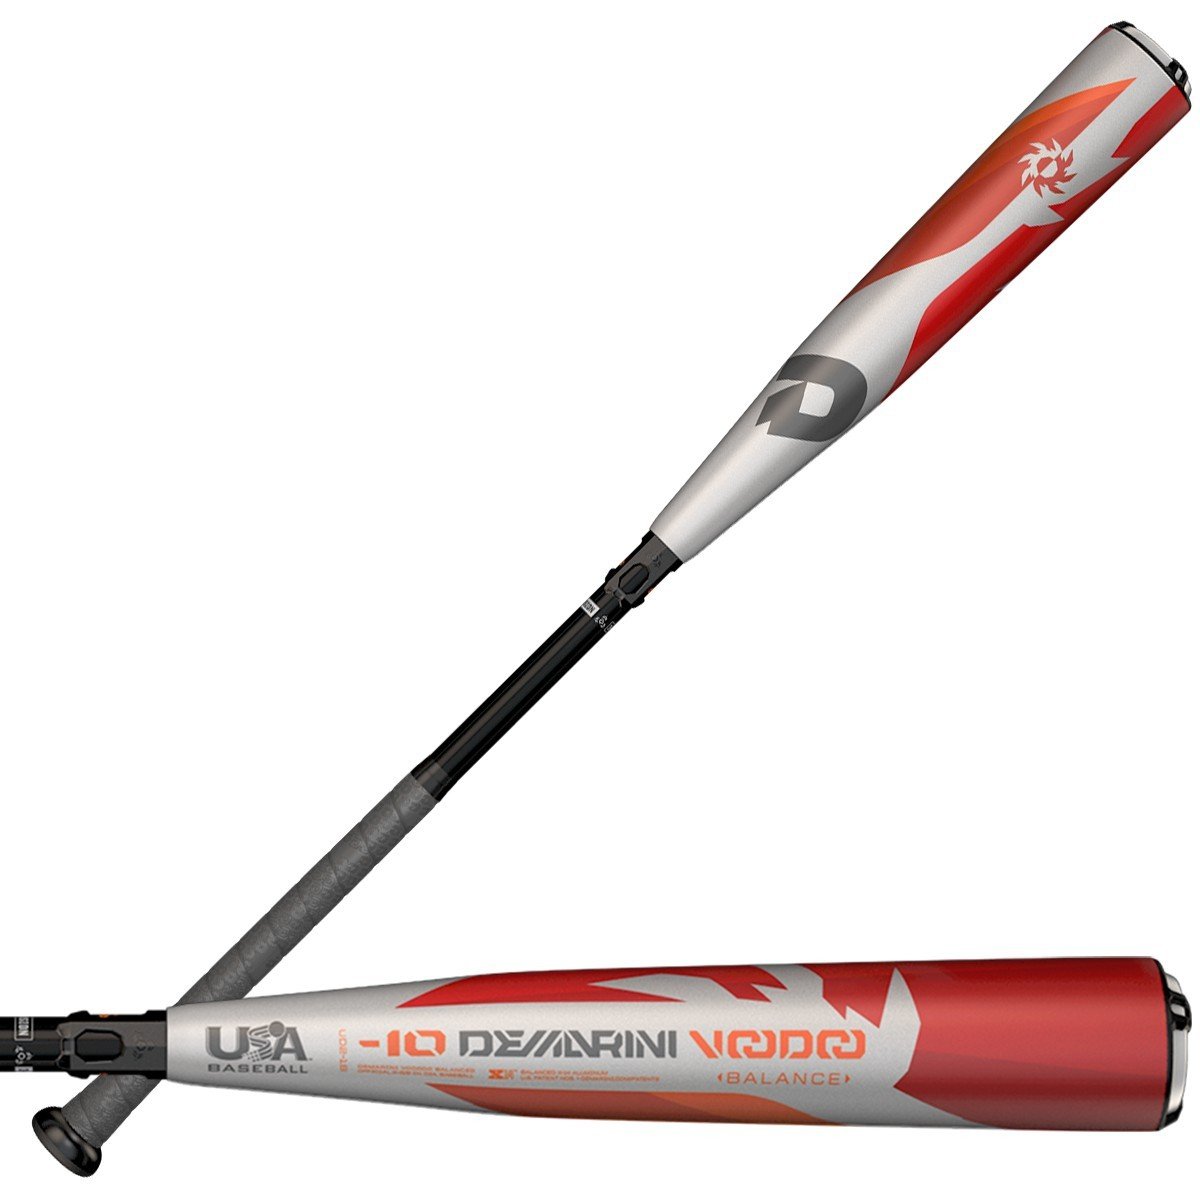 DeMarini Voodoo -10 Balanced USA Youth Baseball Bat 2 5/8 Balanced WTDXUD2 